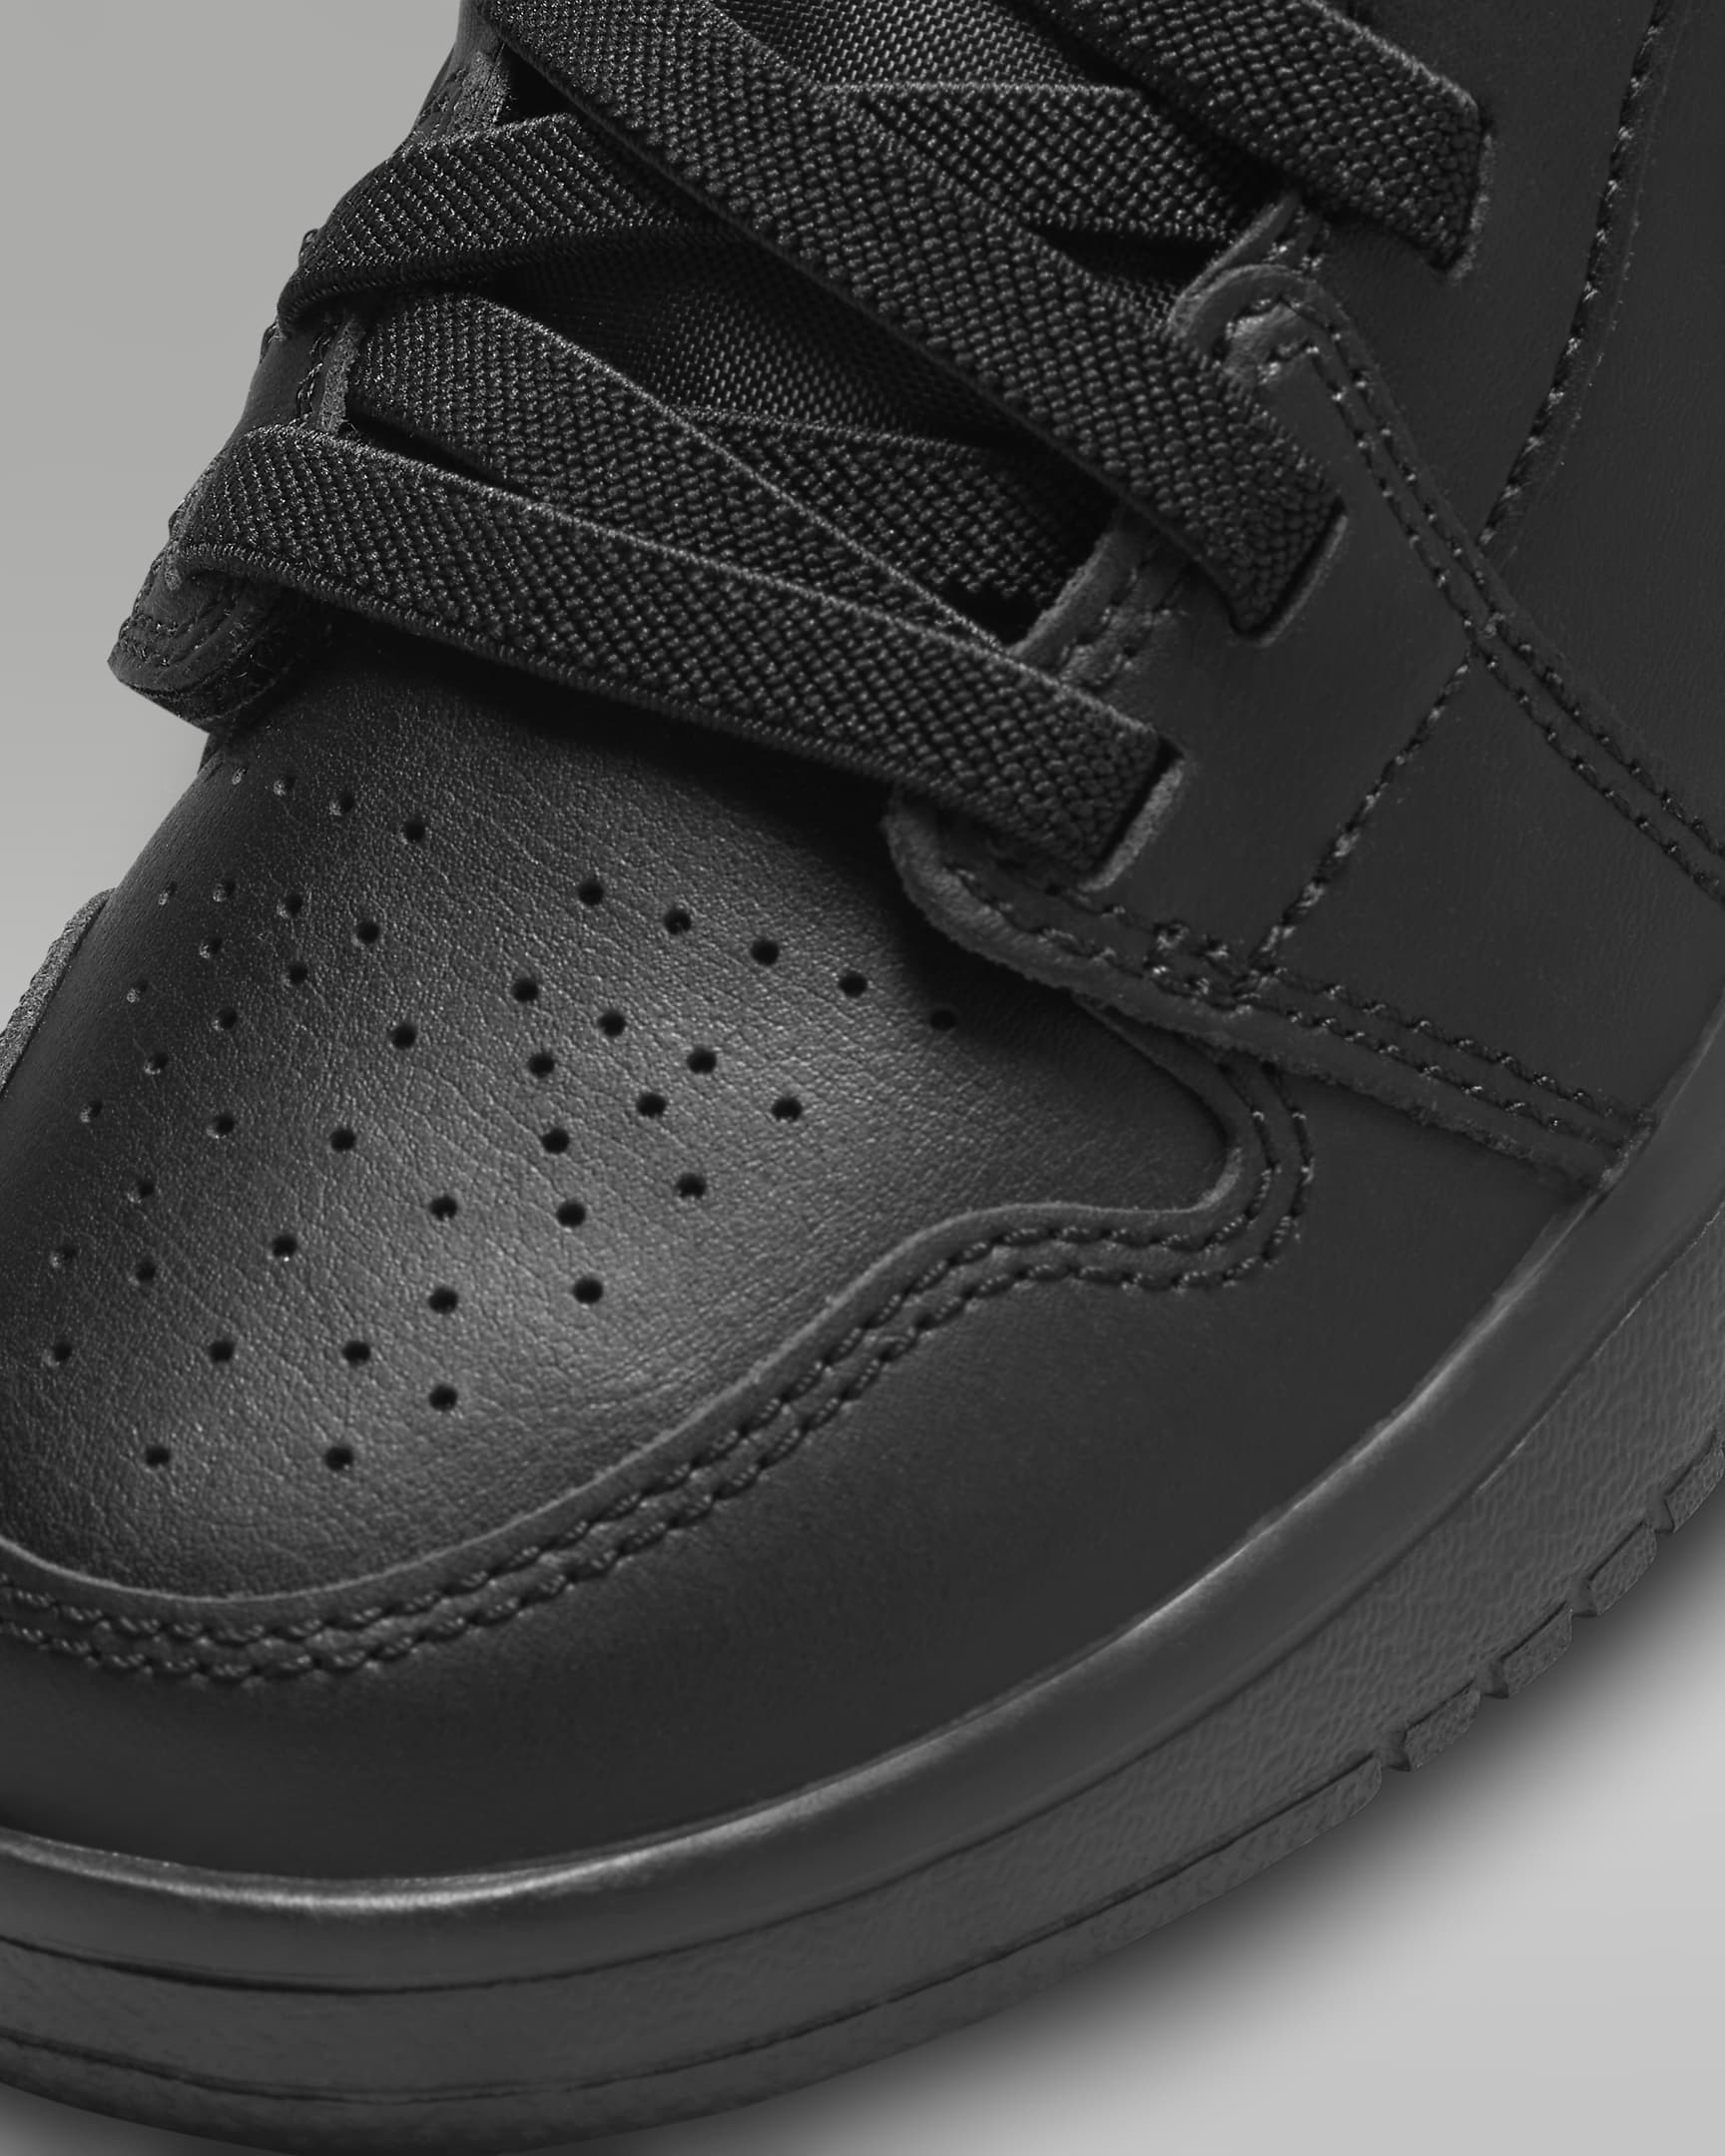 Jordan 1 Low Alt Younger Kids' Shoes - Black/Black/Black